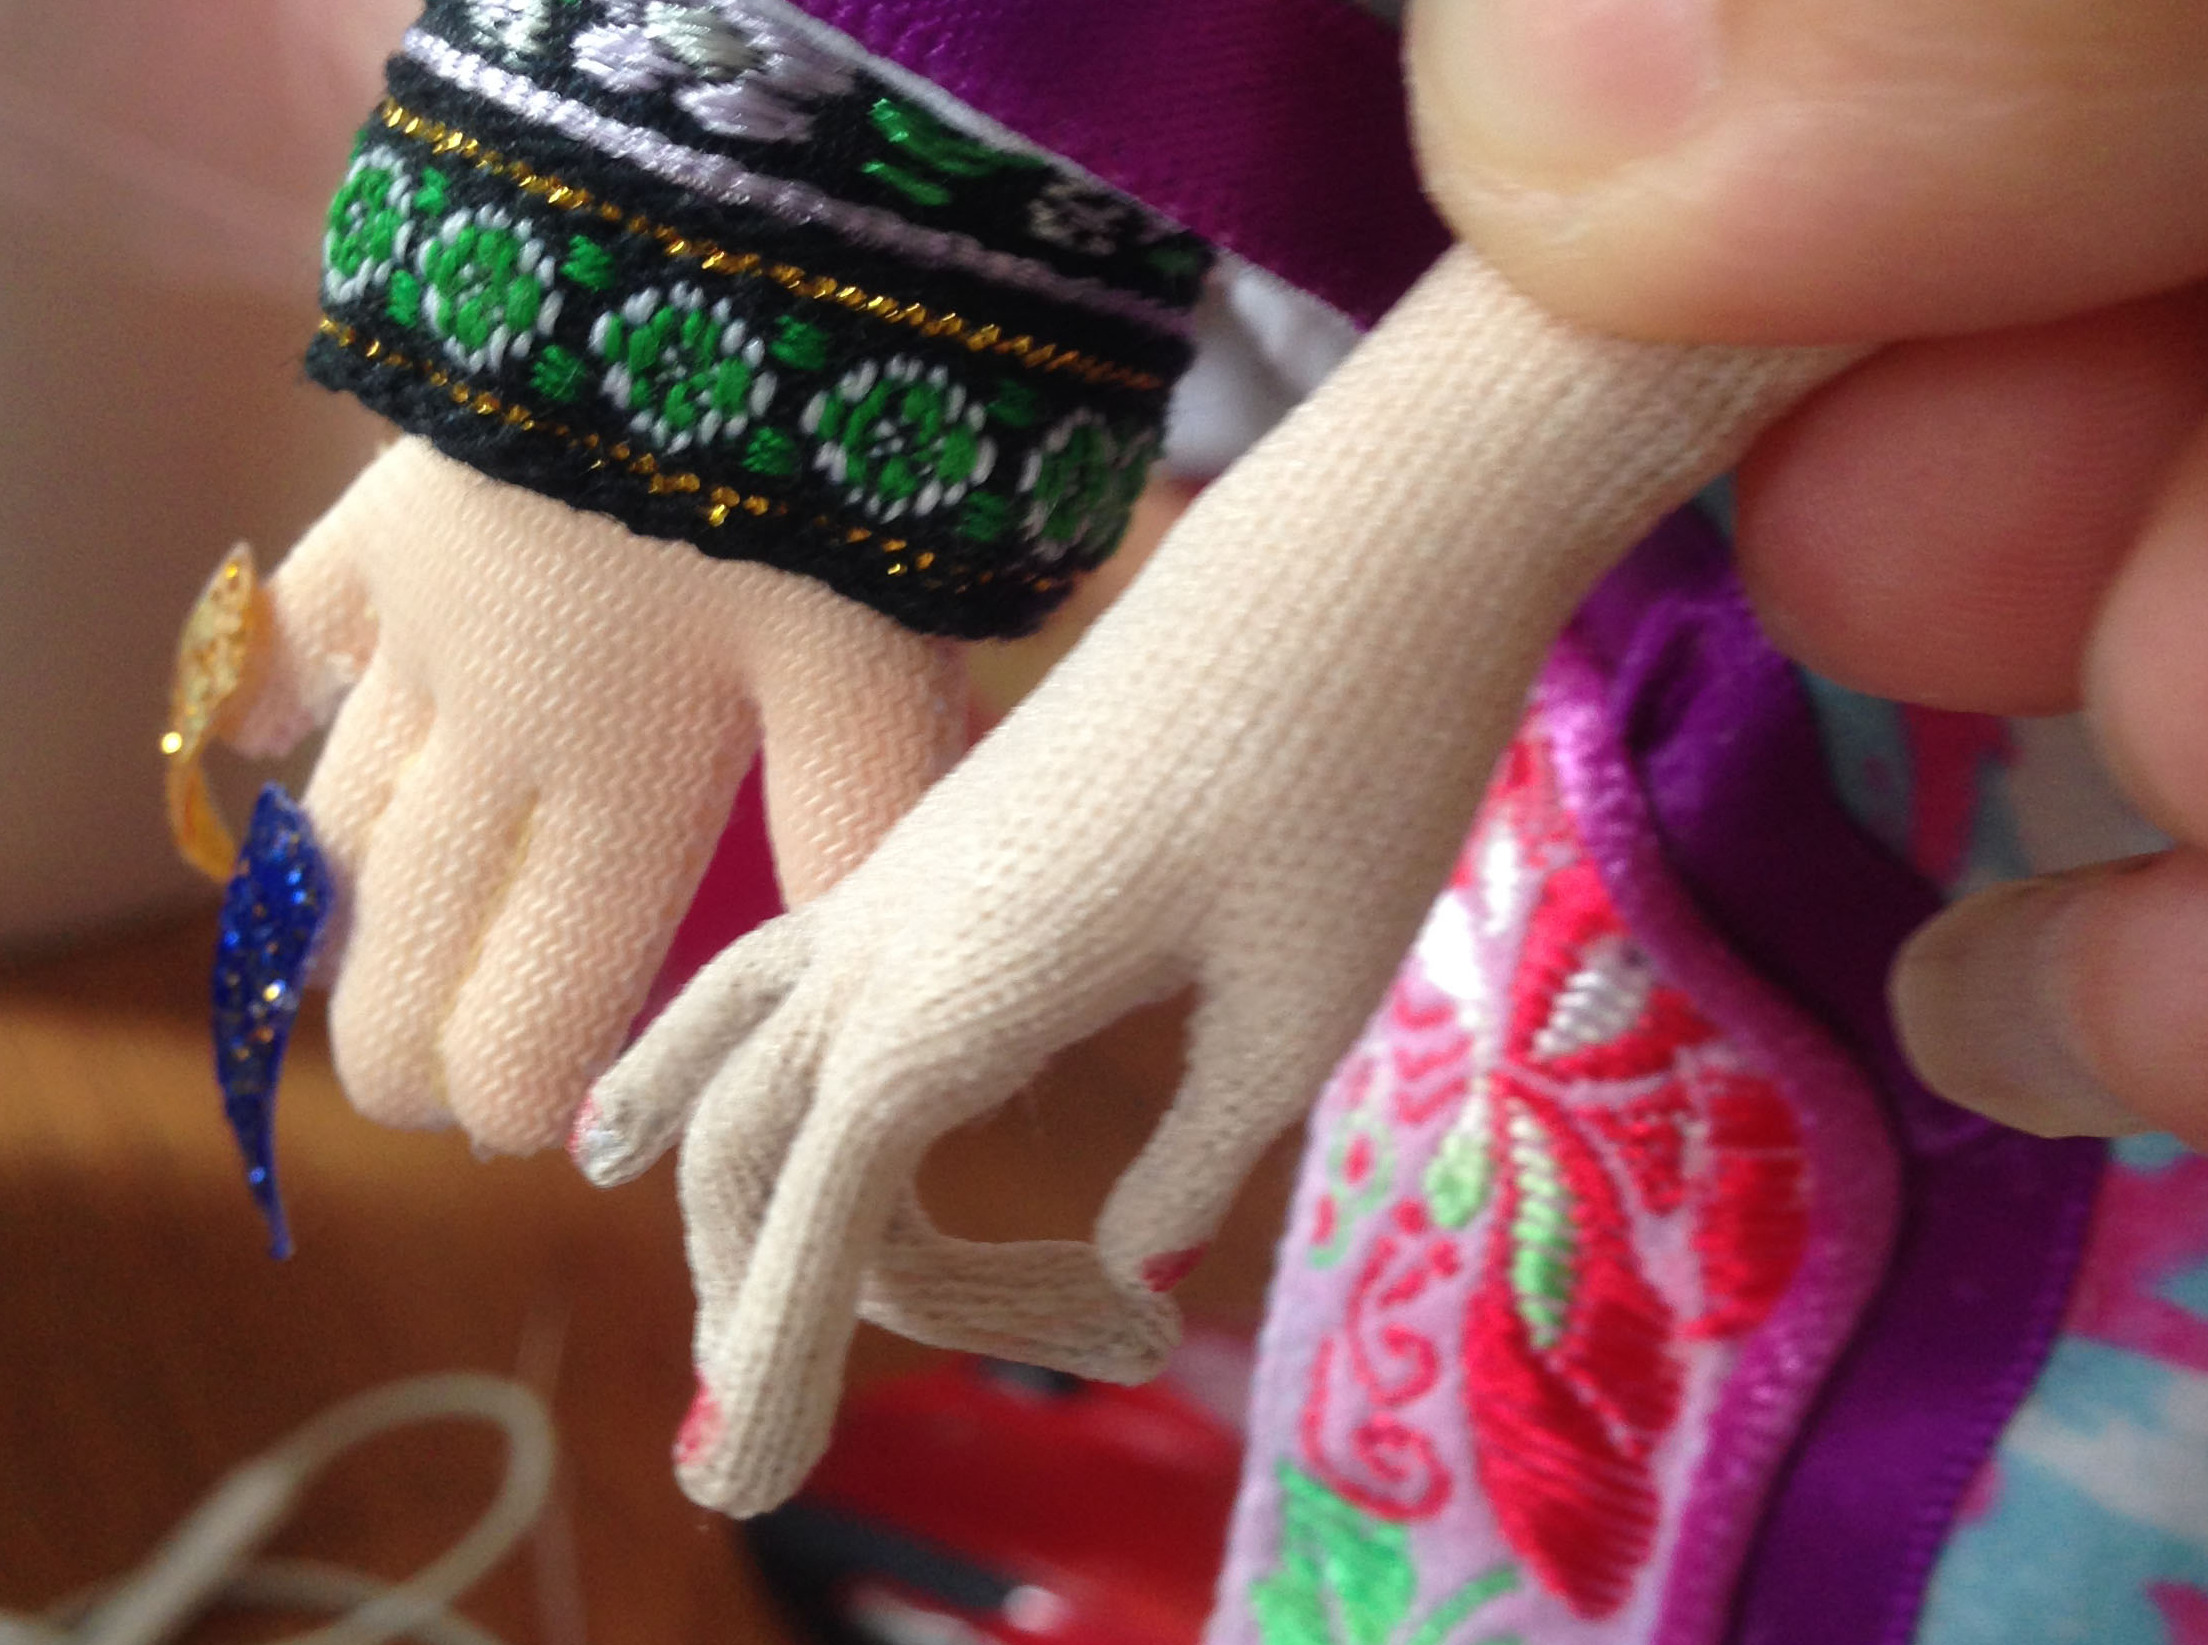 去北京学了3个月的绢人，用到布艺娃娃身上，虽然因材料限制，没有绢人的纤细灵动，但也是美美哒。
只做了手部教程演示，做的粗糙请见谅。
